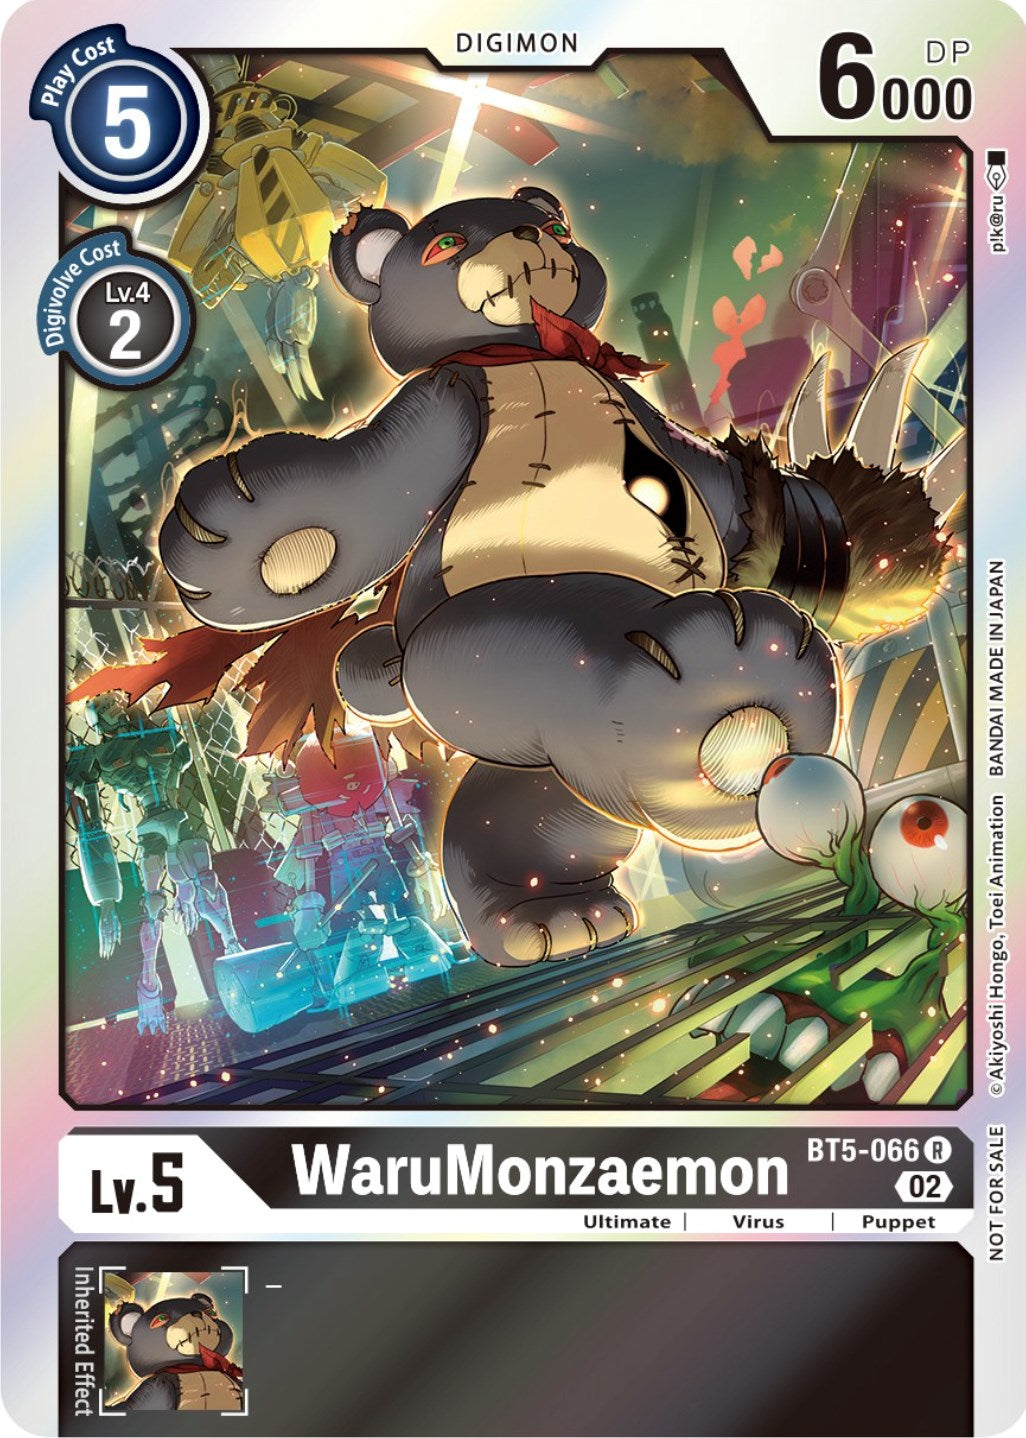 WaruMonzaemon [BT5-066] (Official Tournament Pack Vol. 7) [Battle of Omni Promos] | Devastation Store